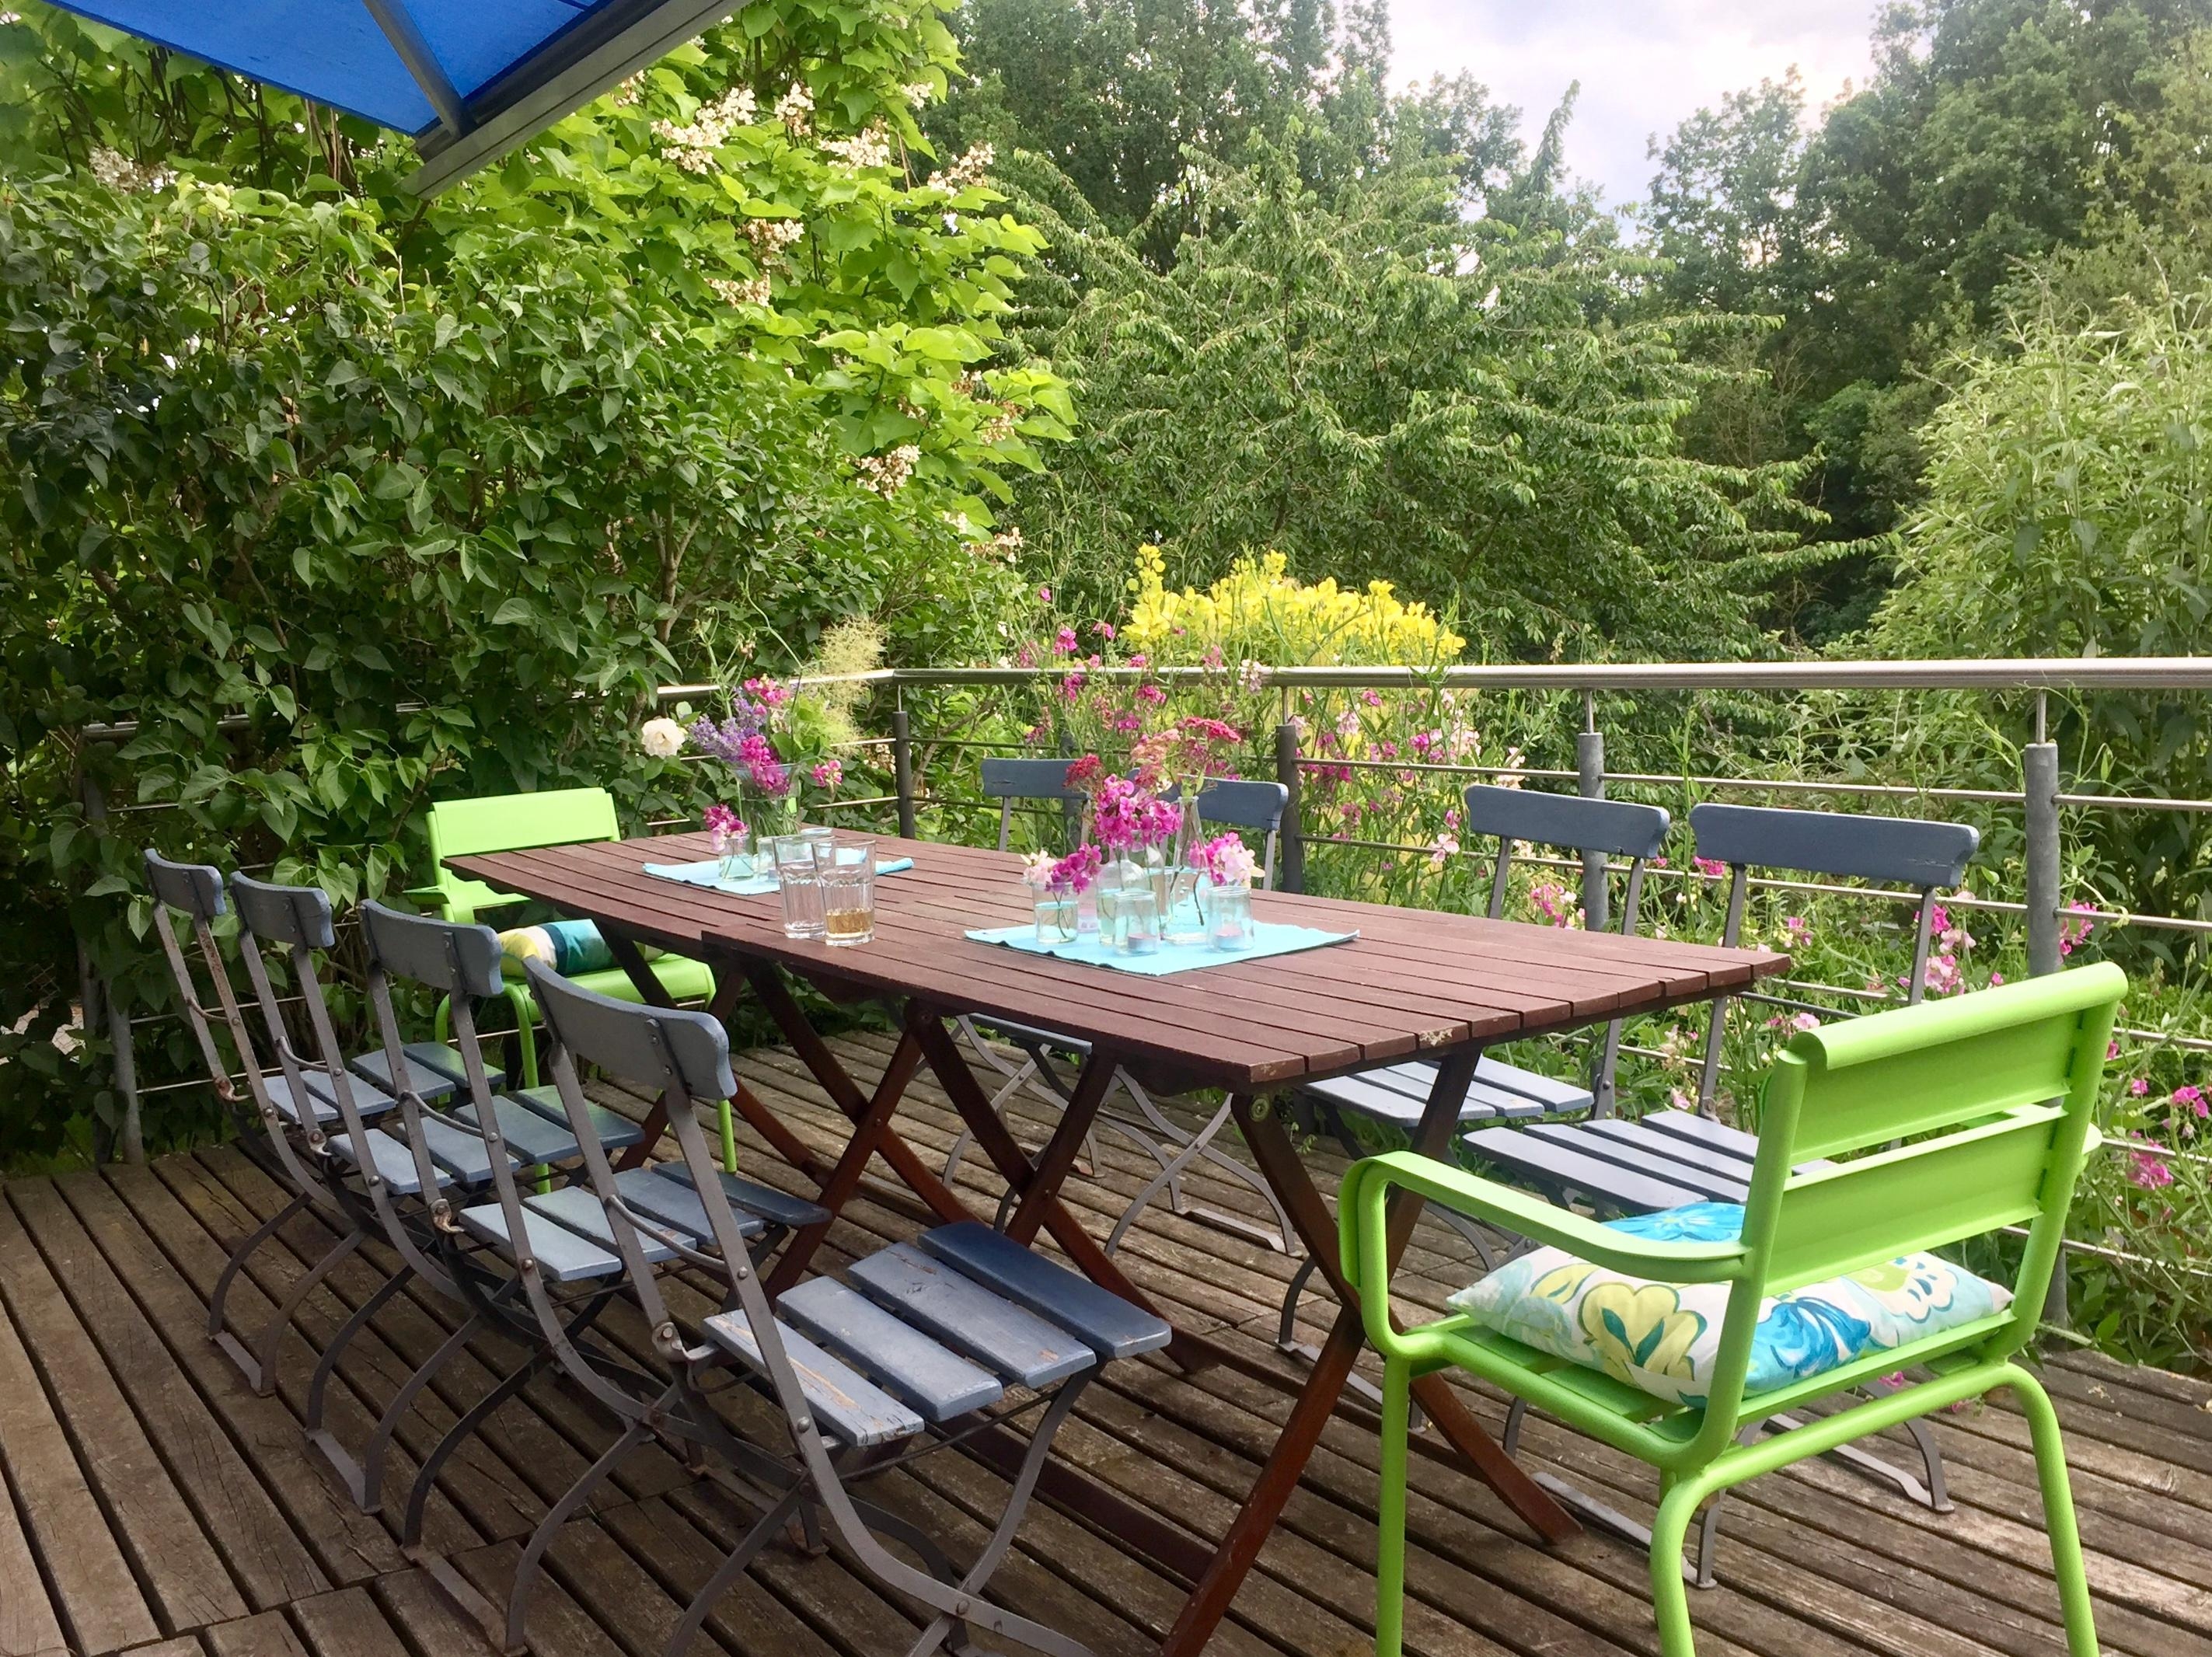 #balkondiy
Alte Stühle blau angemalt, grasgrüne Begleiter und passende Kissen dazu, fertig ist der Gute-Laune-Balkon.
